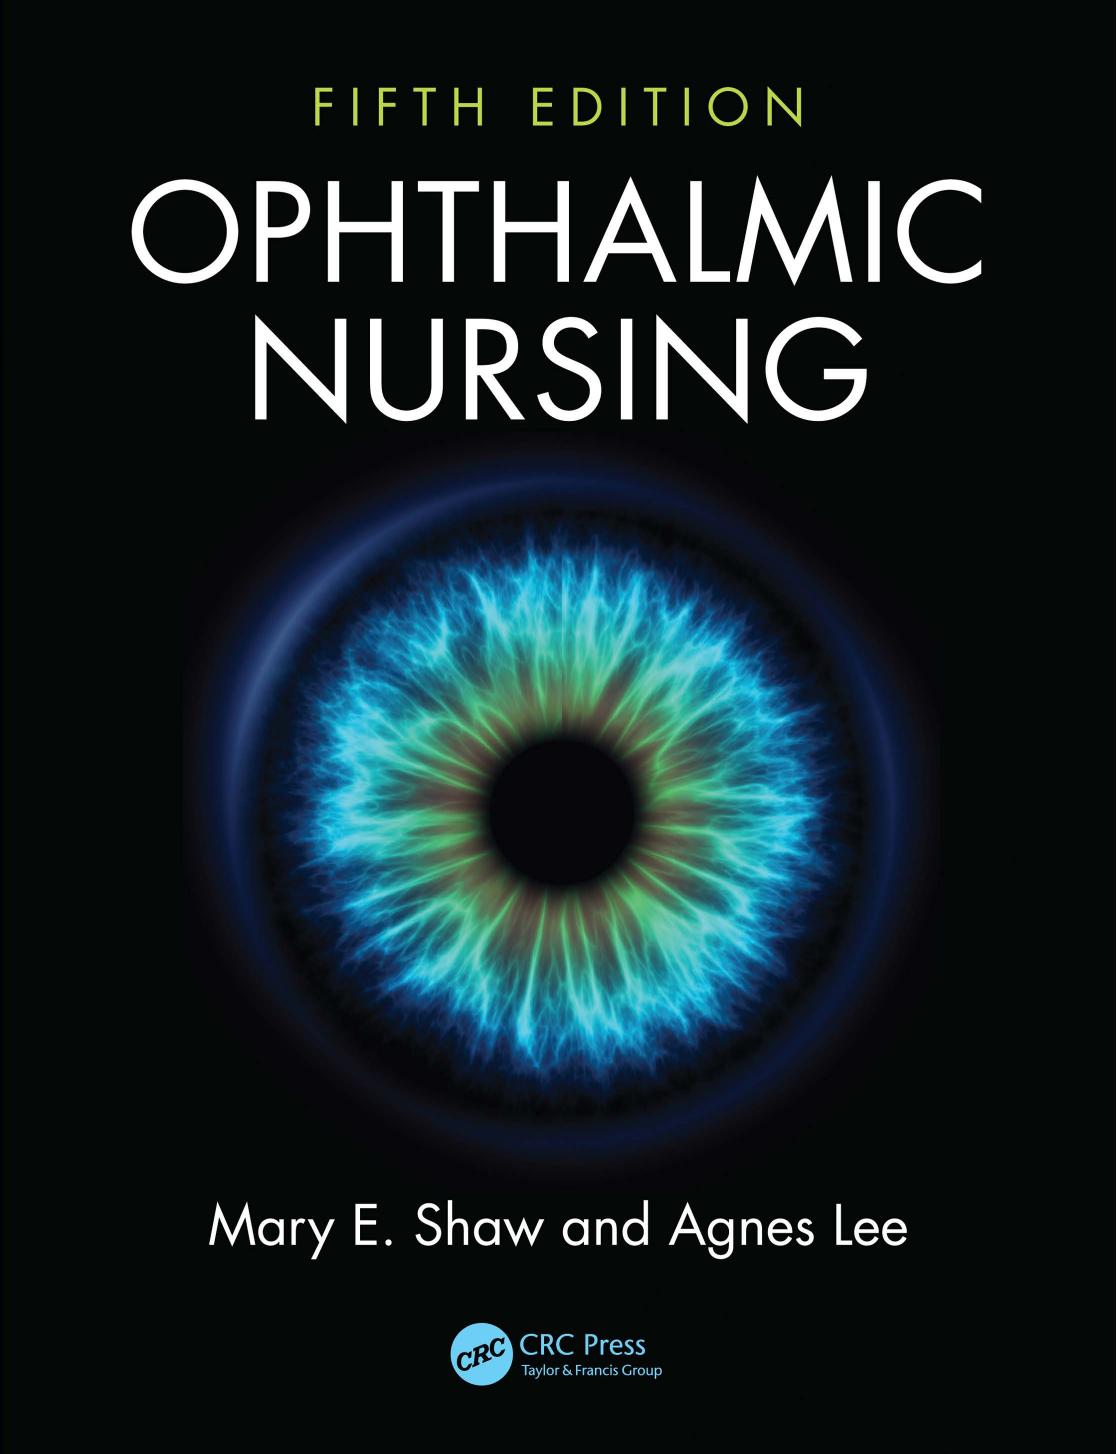 Ophthalmic Nursing